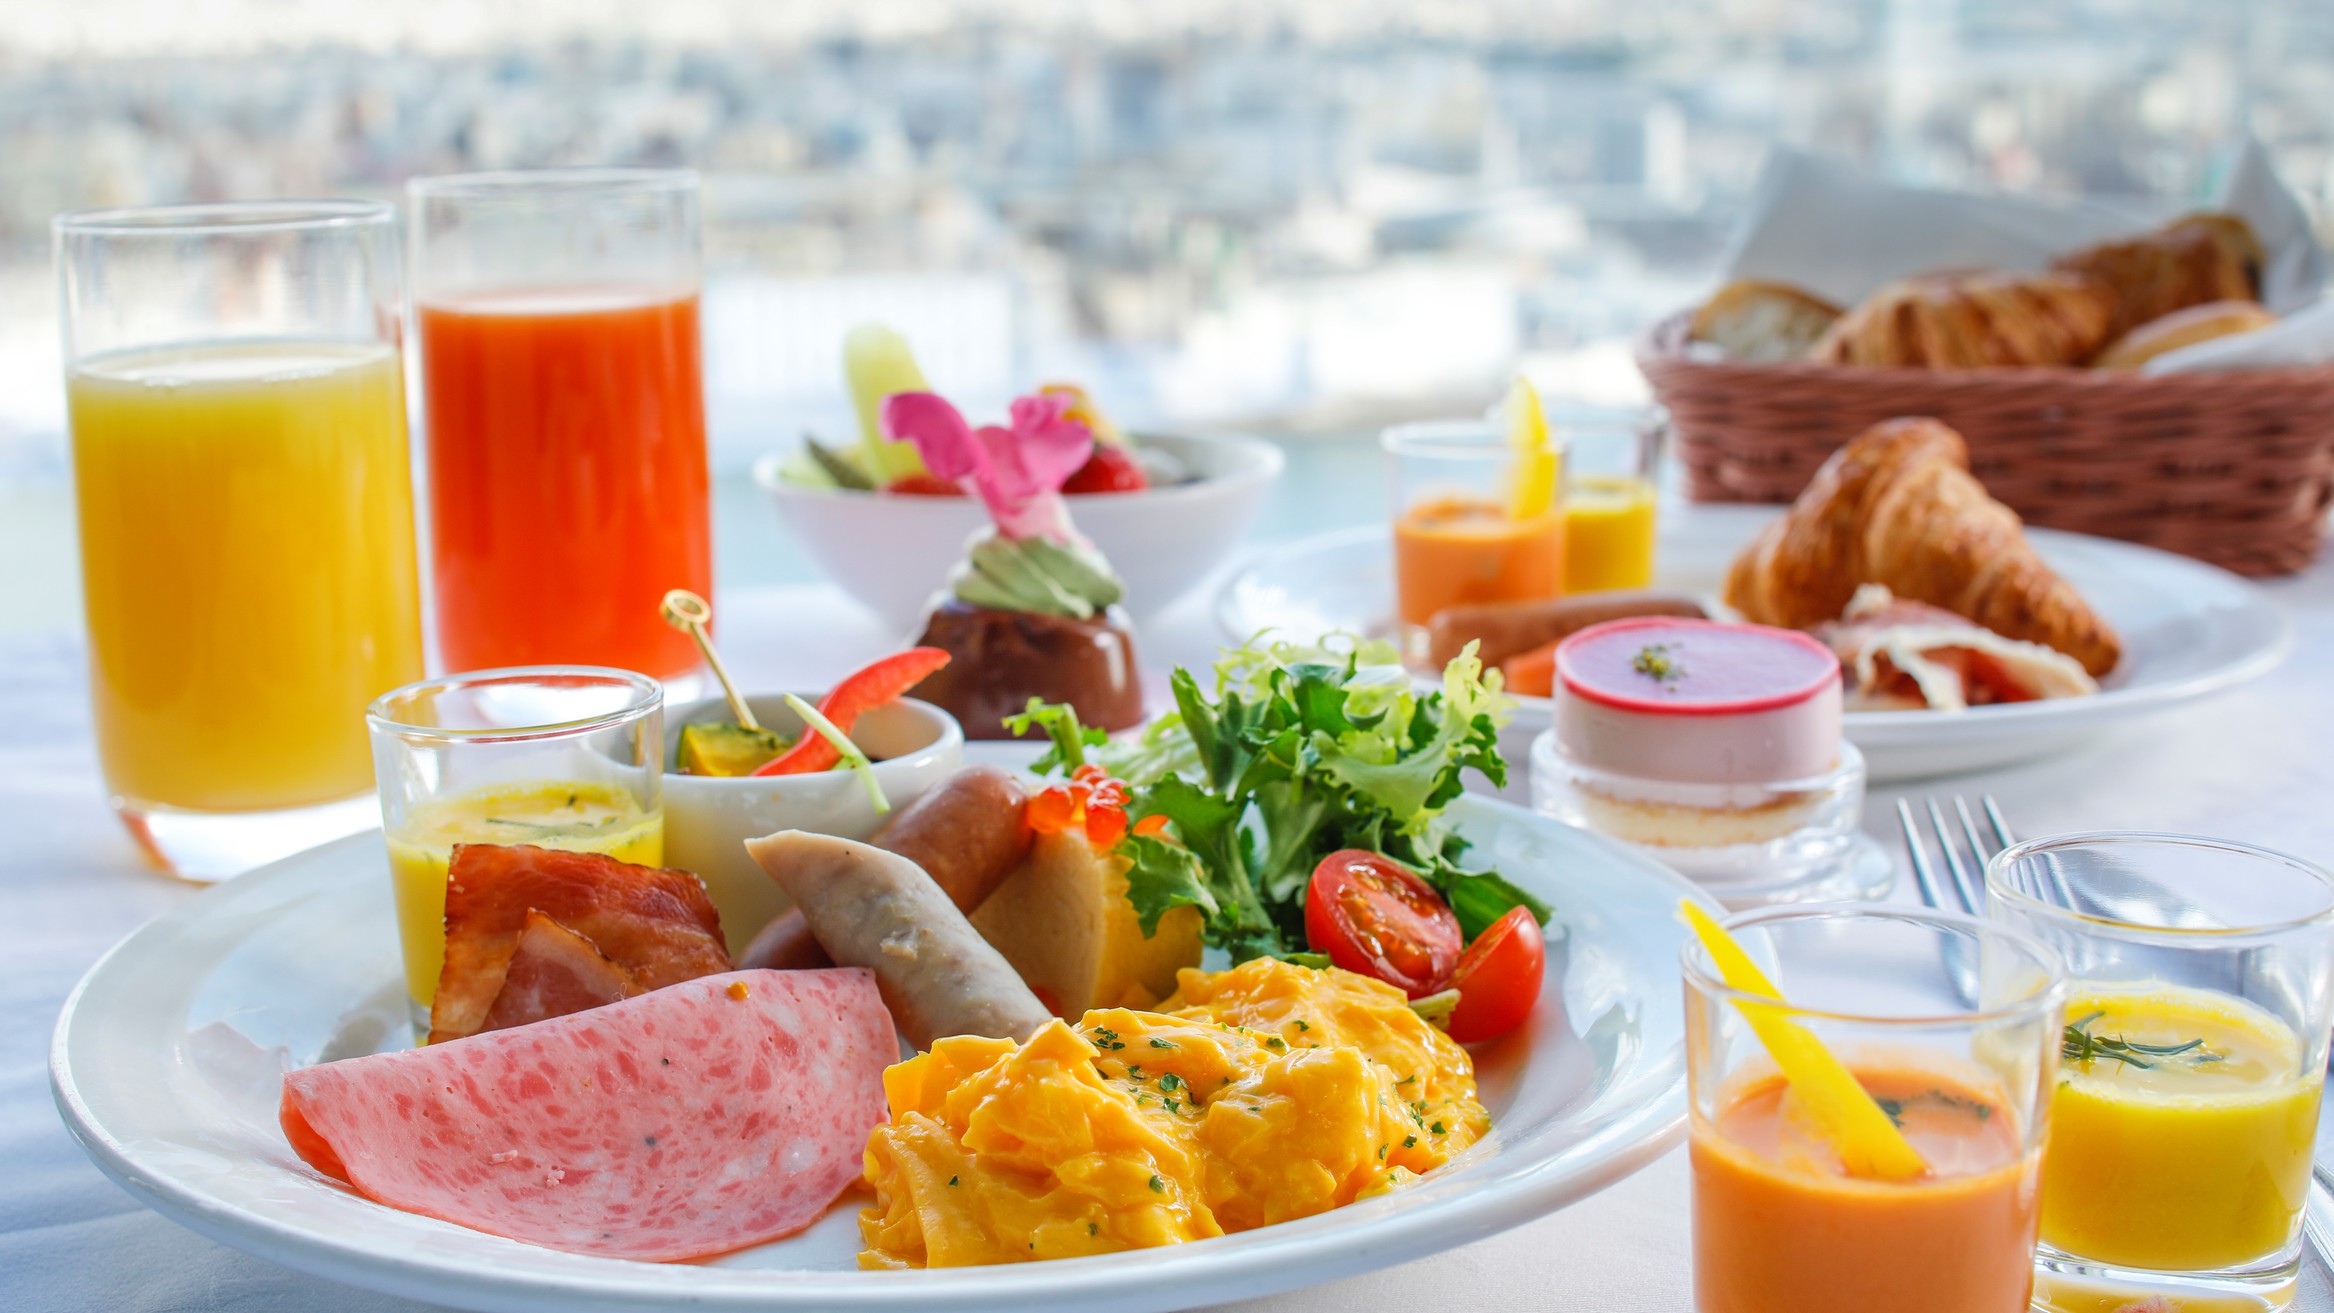 【プレミアムフロア宿泊者限定朝食】最上階のレストランで贅沢な朝食を♪